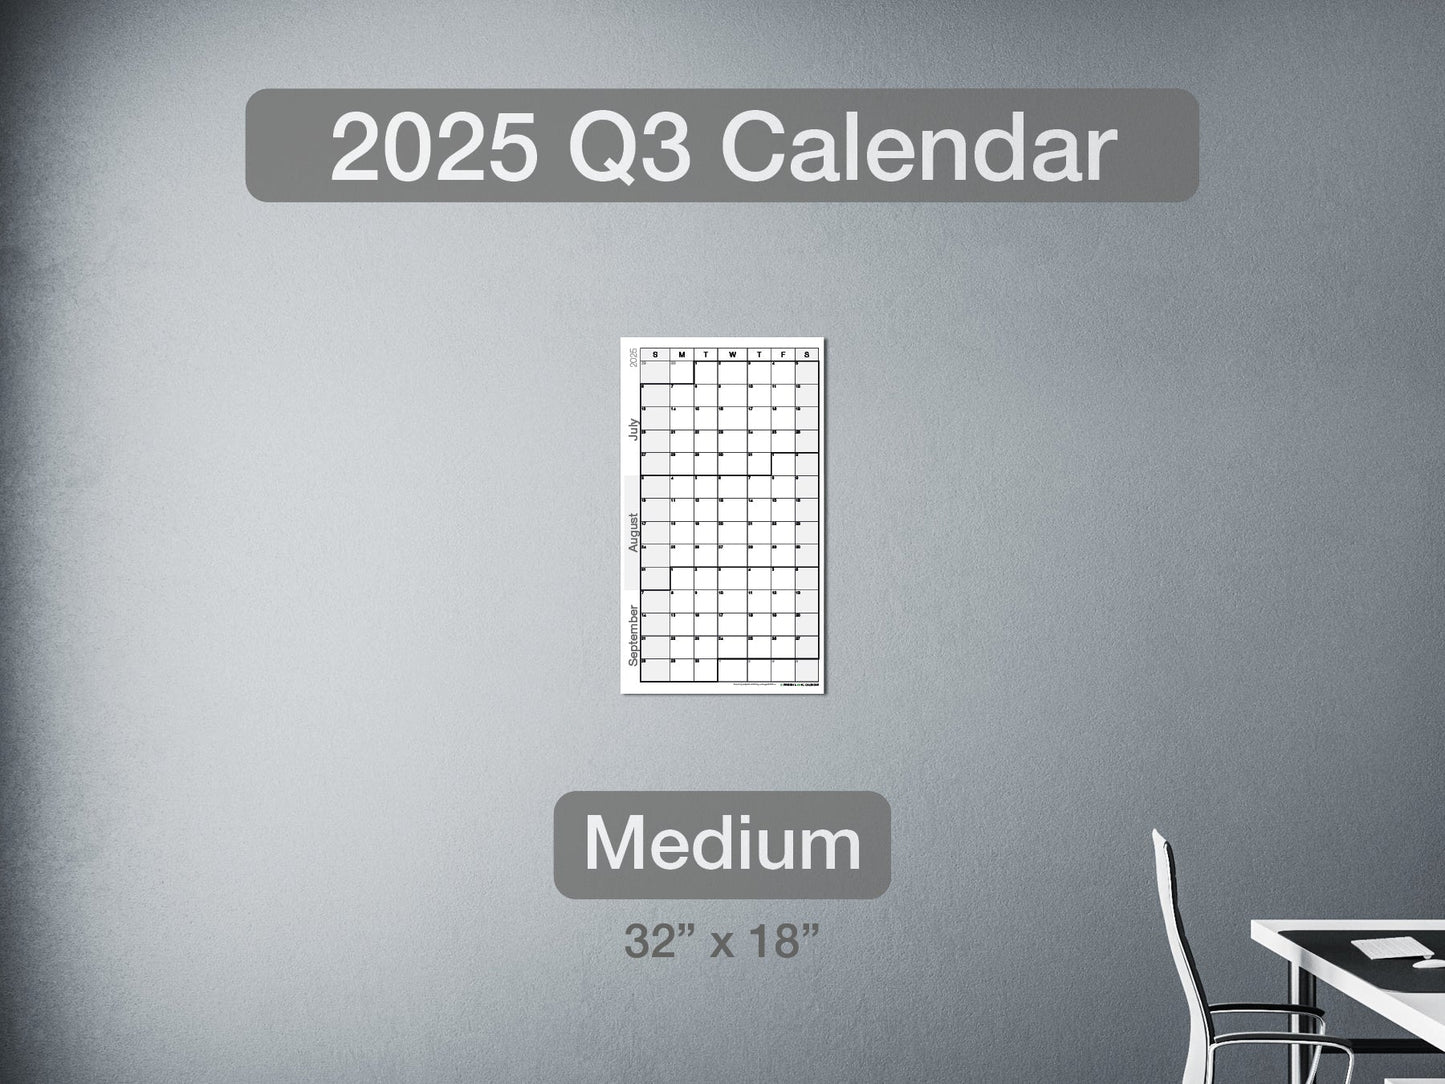 2025 Q3 Calendar Medium